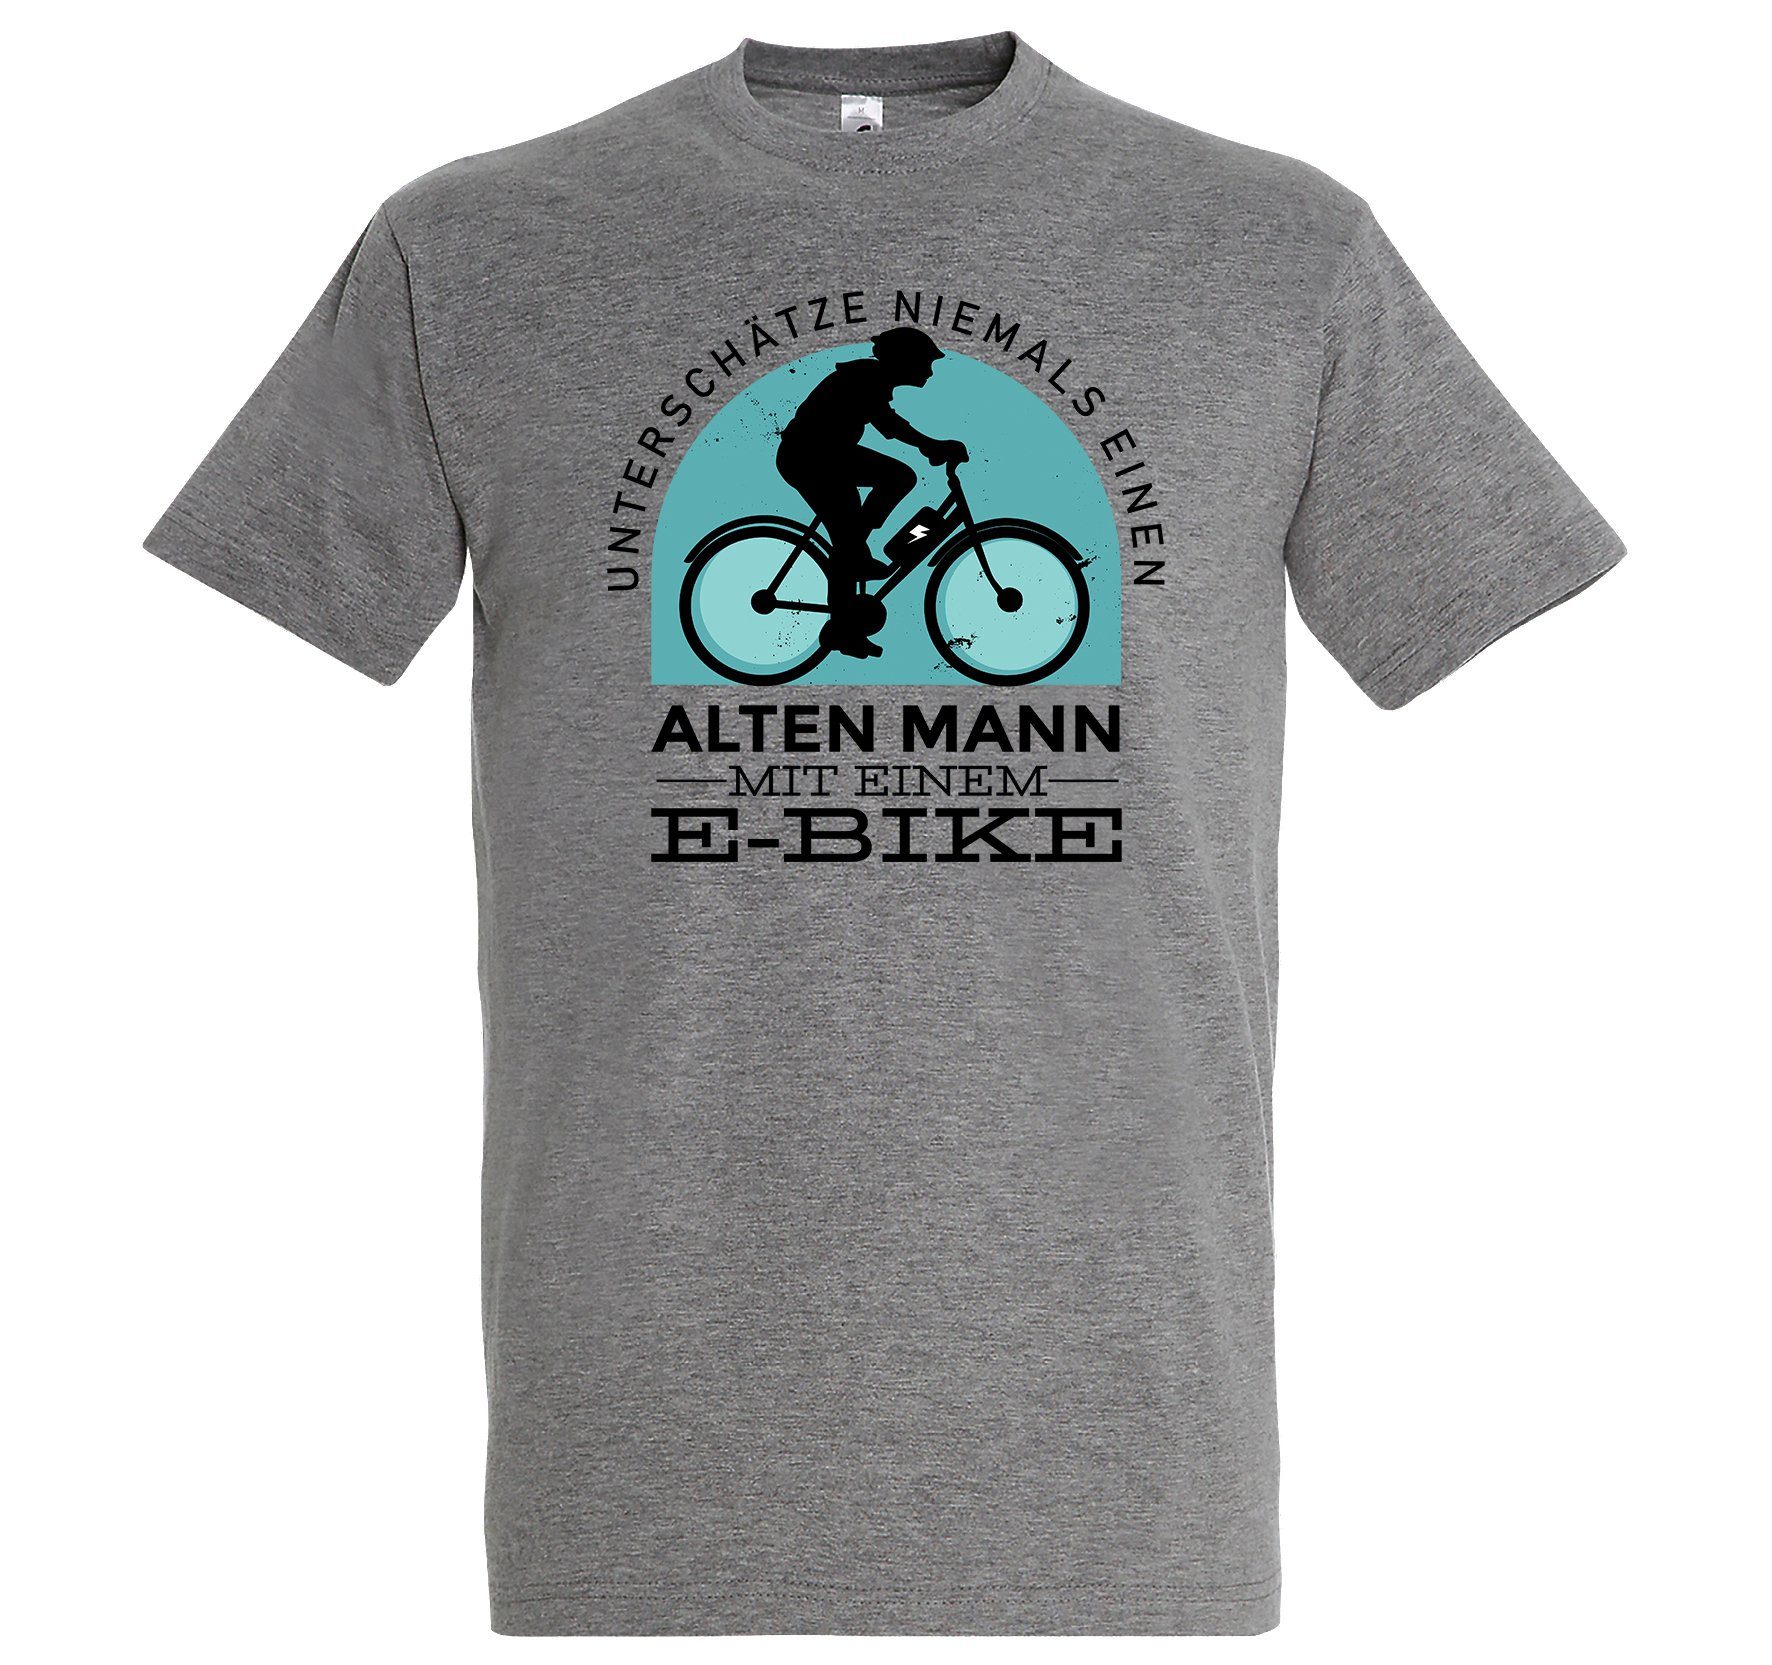 Youth Designz T-Shirt Alter Mann mit E-Bike Herren Shirt mit lustigem Fahrrad Frontprint Grau